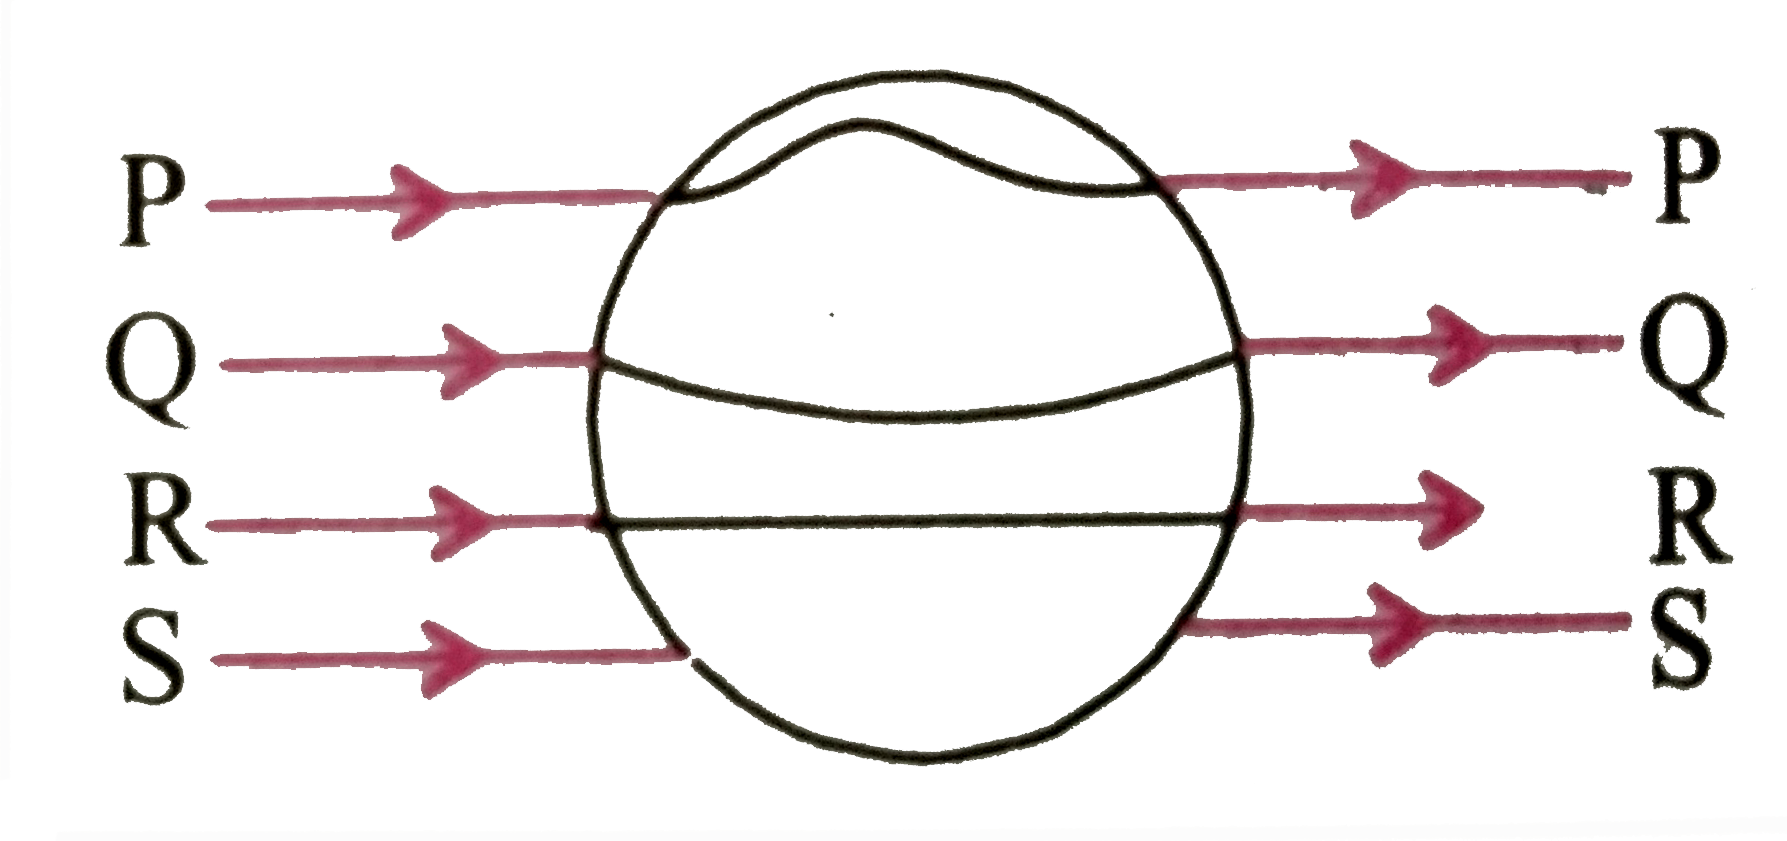 किसी ठोस धात्विक गोले को एक समान विद्युत क्षेत्र vecE में निम्न चित्रानुसार रखा गया है-       P, Q, R, S में से कौन - सी रेखा सही पथ को प्रदर्शित करती है एवं क्यों ?